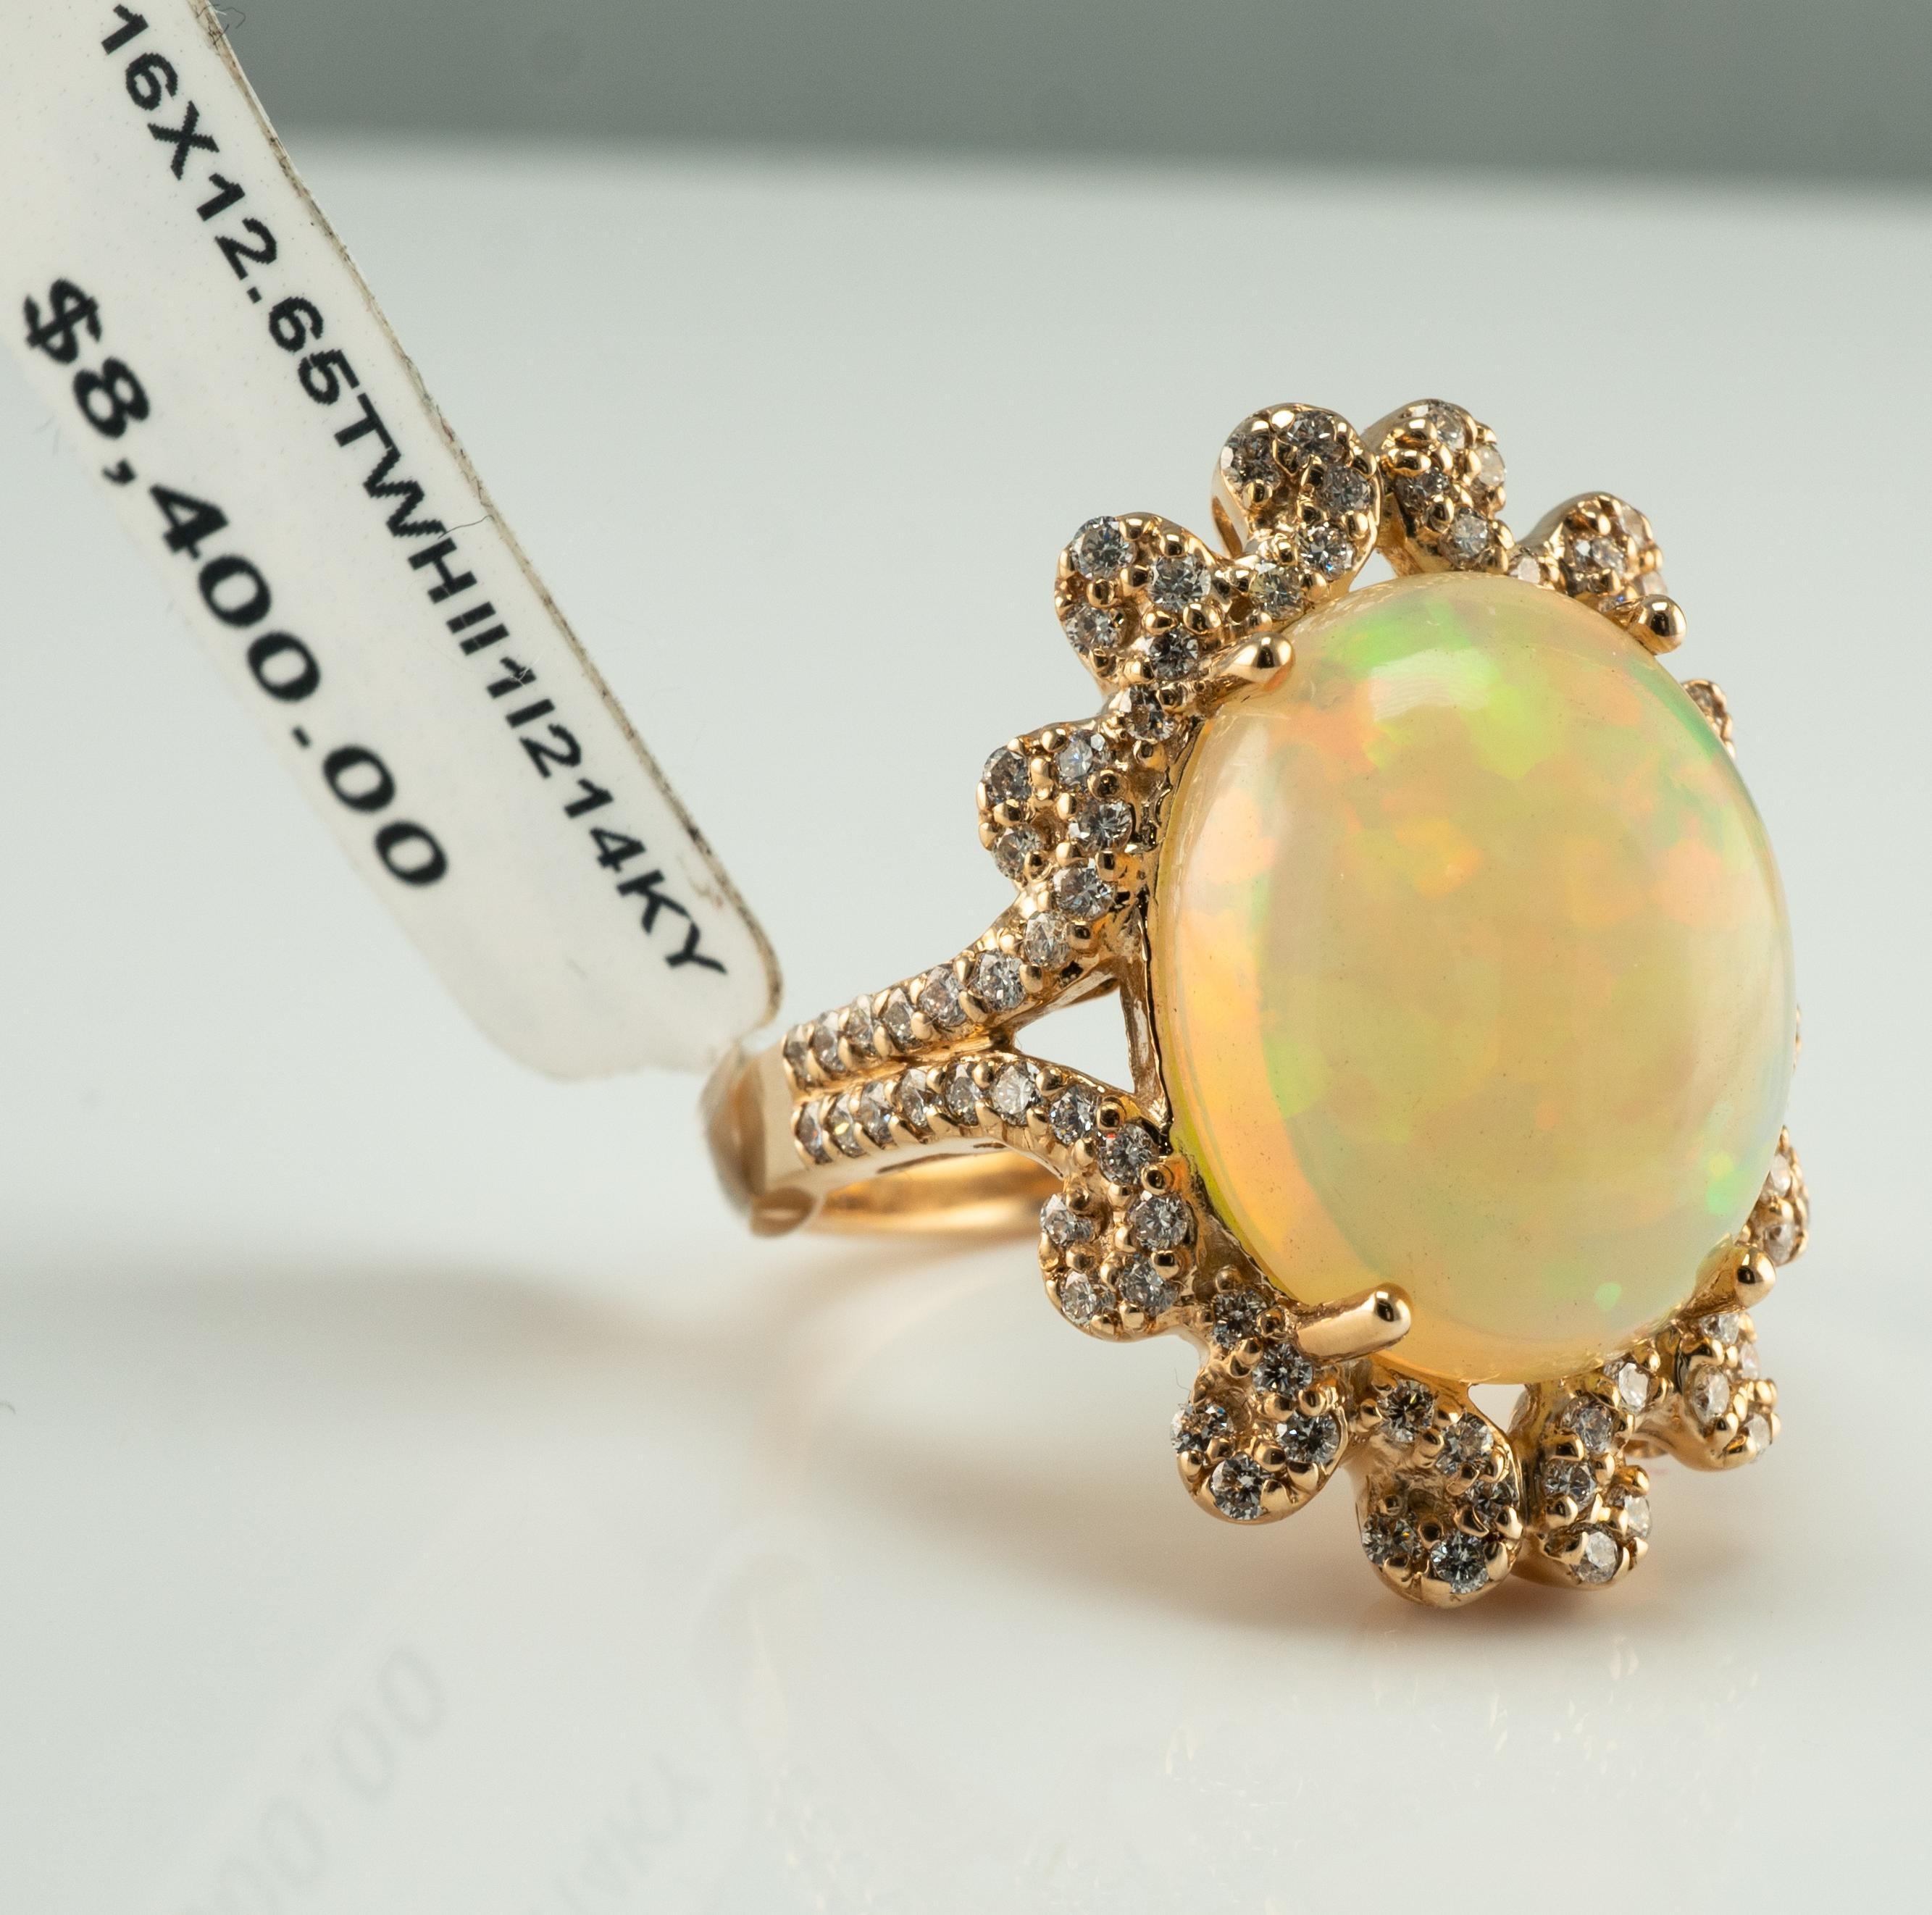 Diamant-Kristall-Opal-Ring 14K Gelbgold

Dieser Ring ist aus massivem 14-karätigem Gelbgold gefertigt und mit echten Opalen und Diamanten besetzt.
Der Ring kam zu uns von einer Auktion und hat noch ein Auktionsetikett angebracht.
Der zentrale